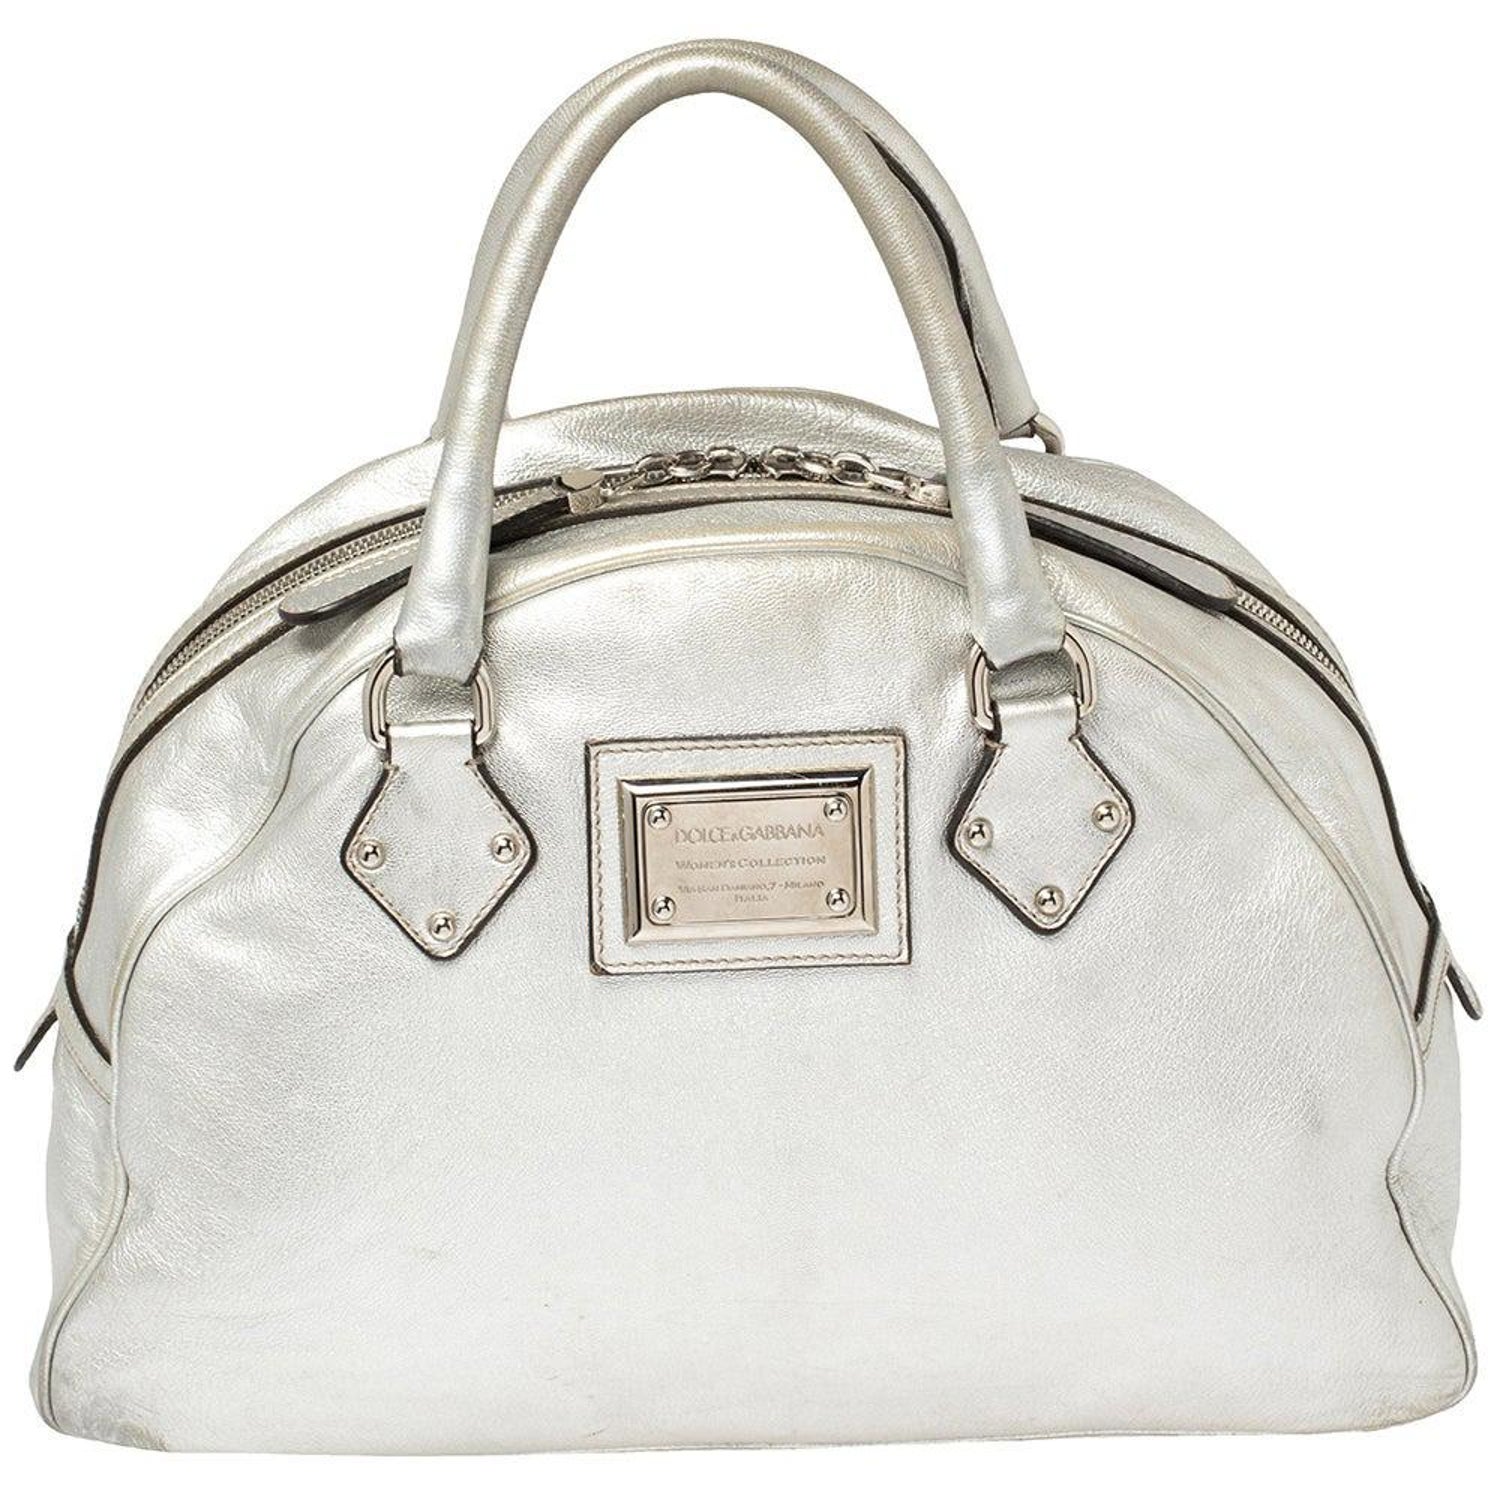 Hermès Birkin 35 handbag in Vert Amande Togo leather with silver